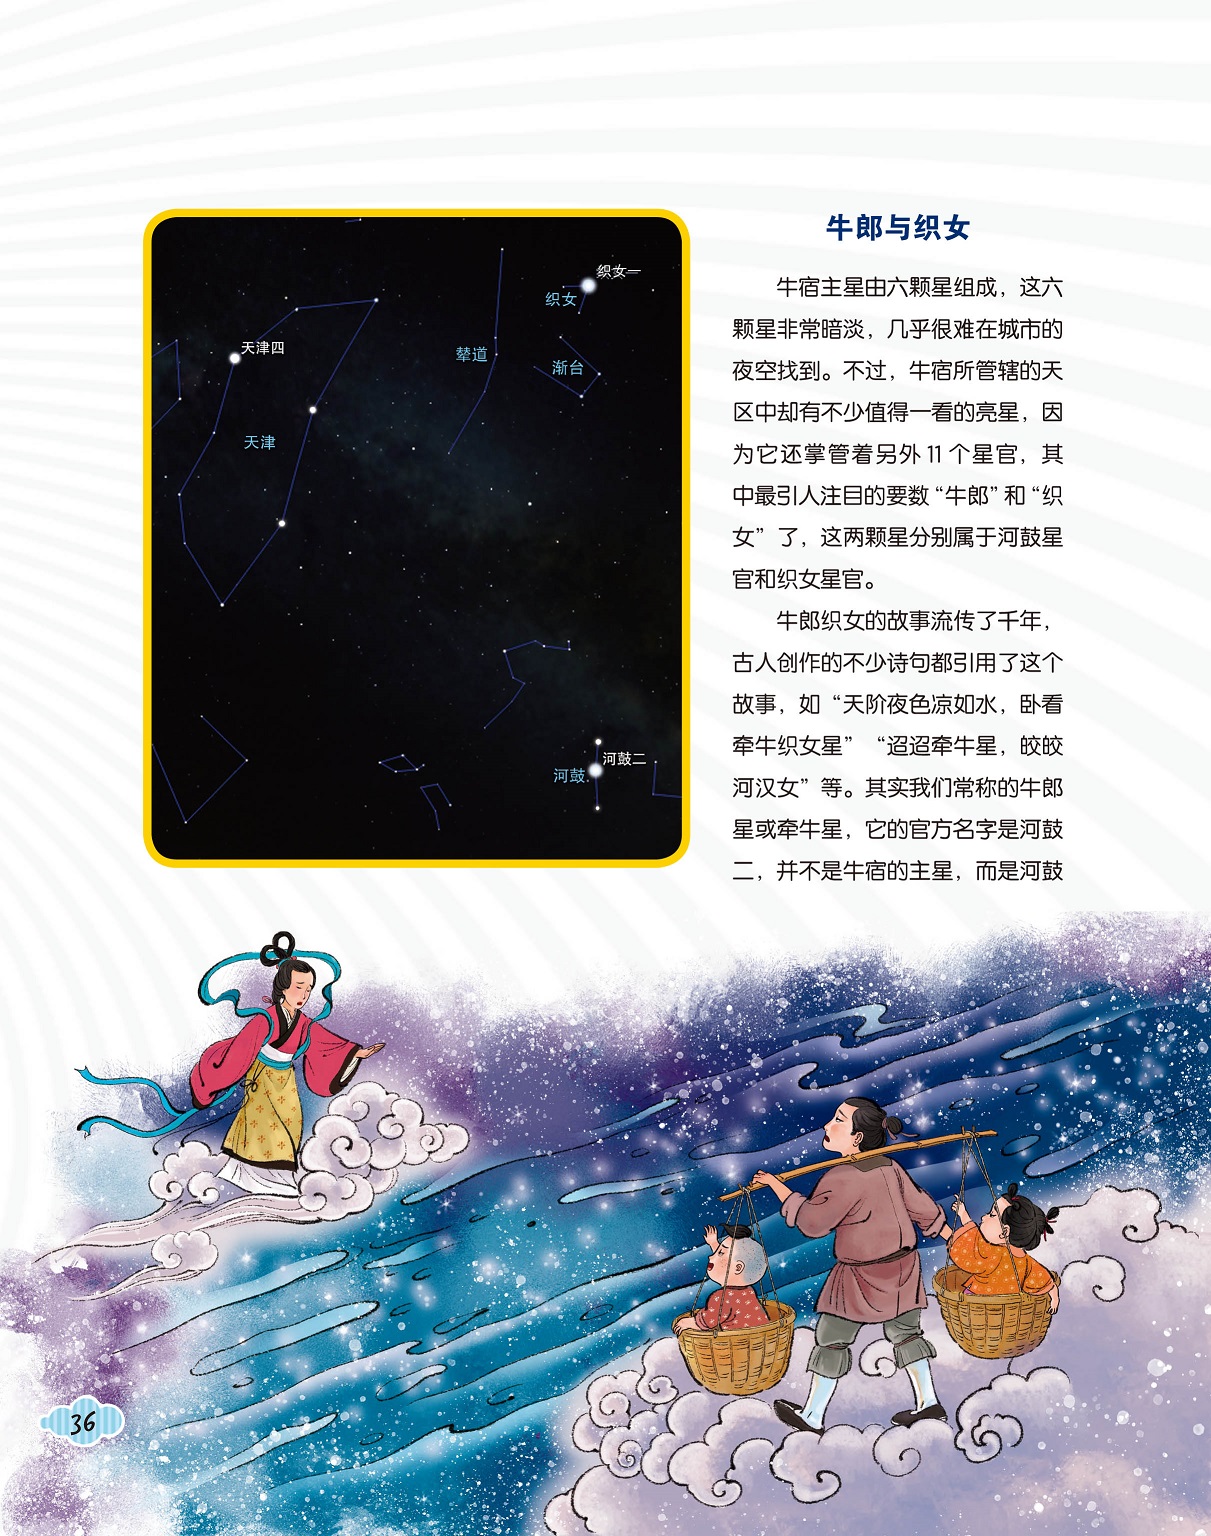 牛宿主星由六颗星组成,牛郎与织女的故事